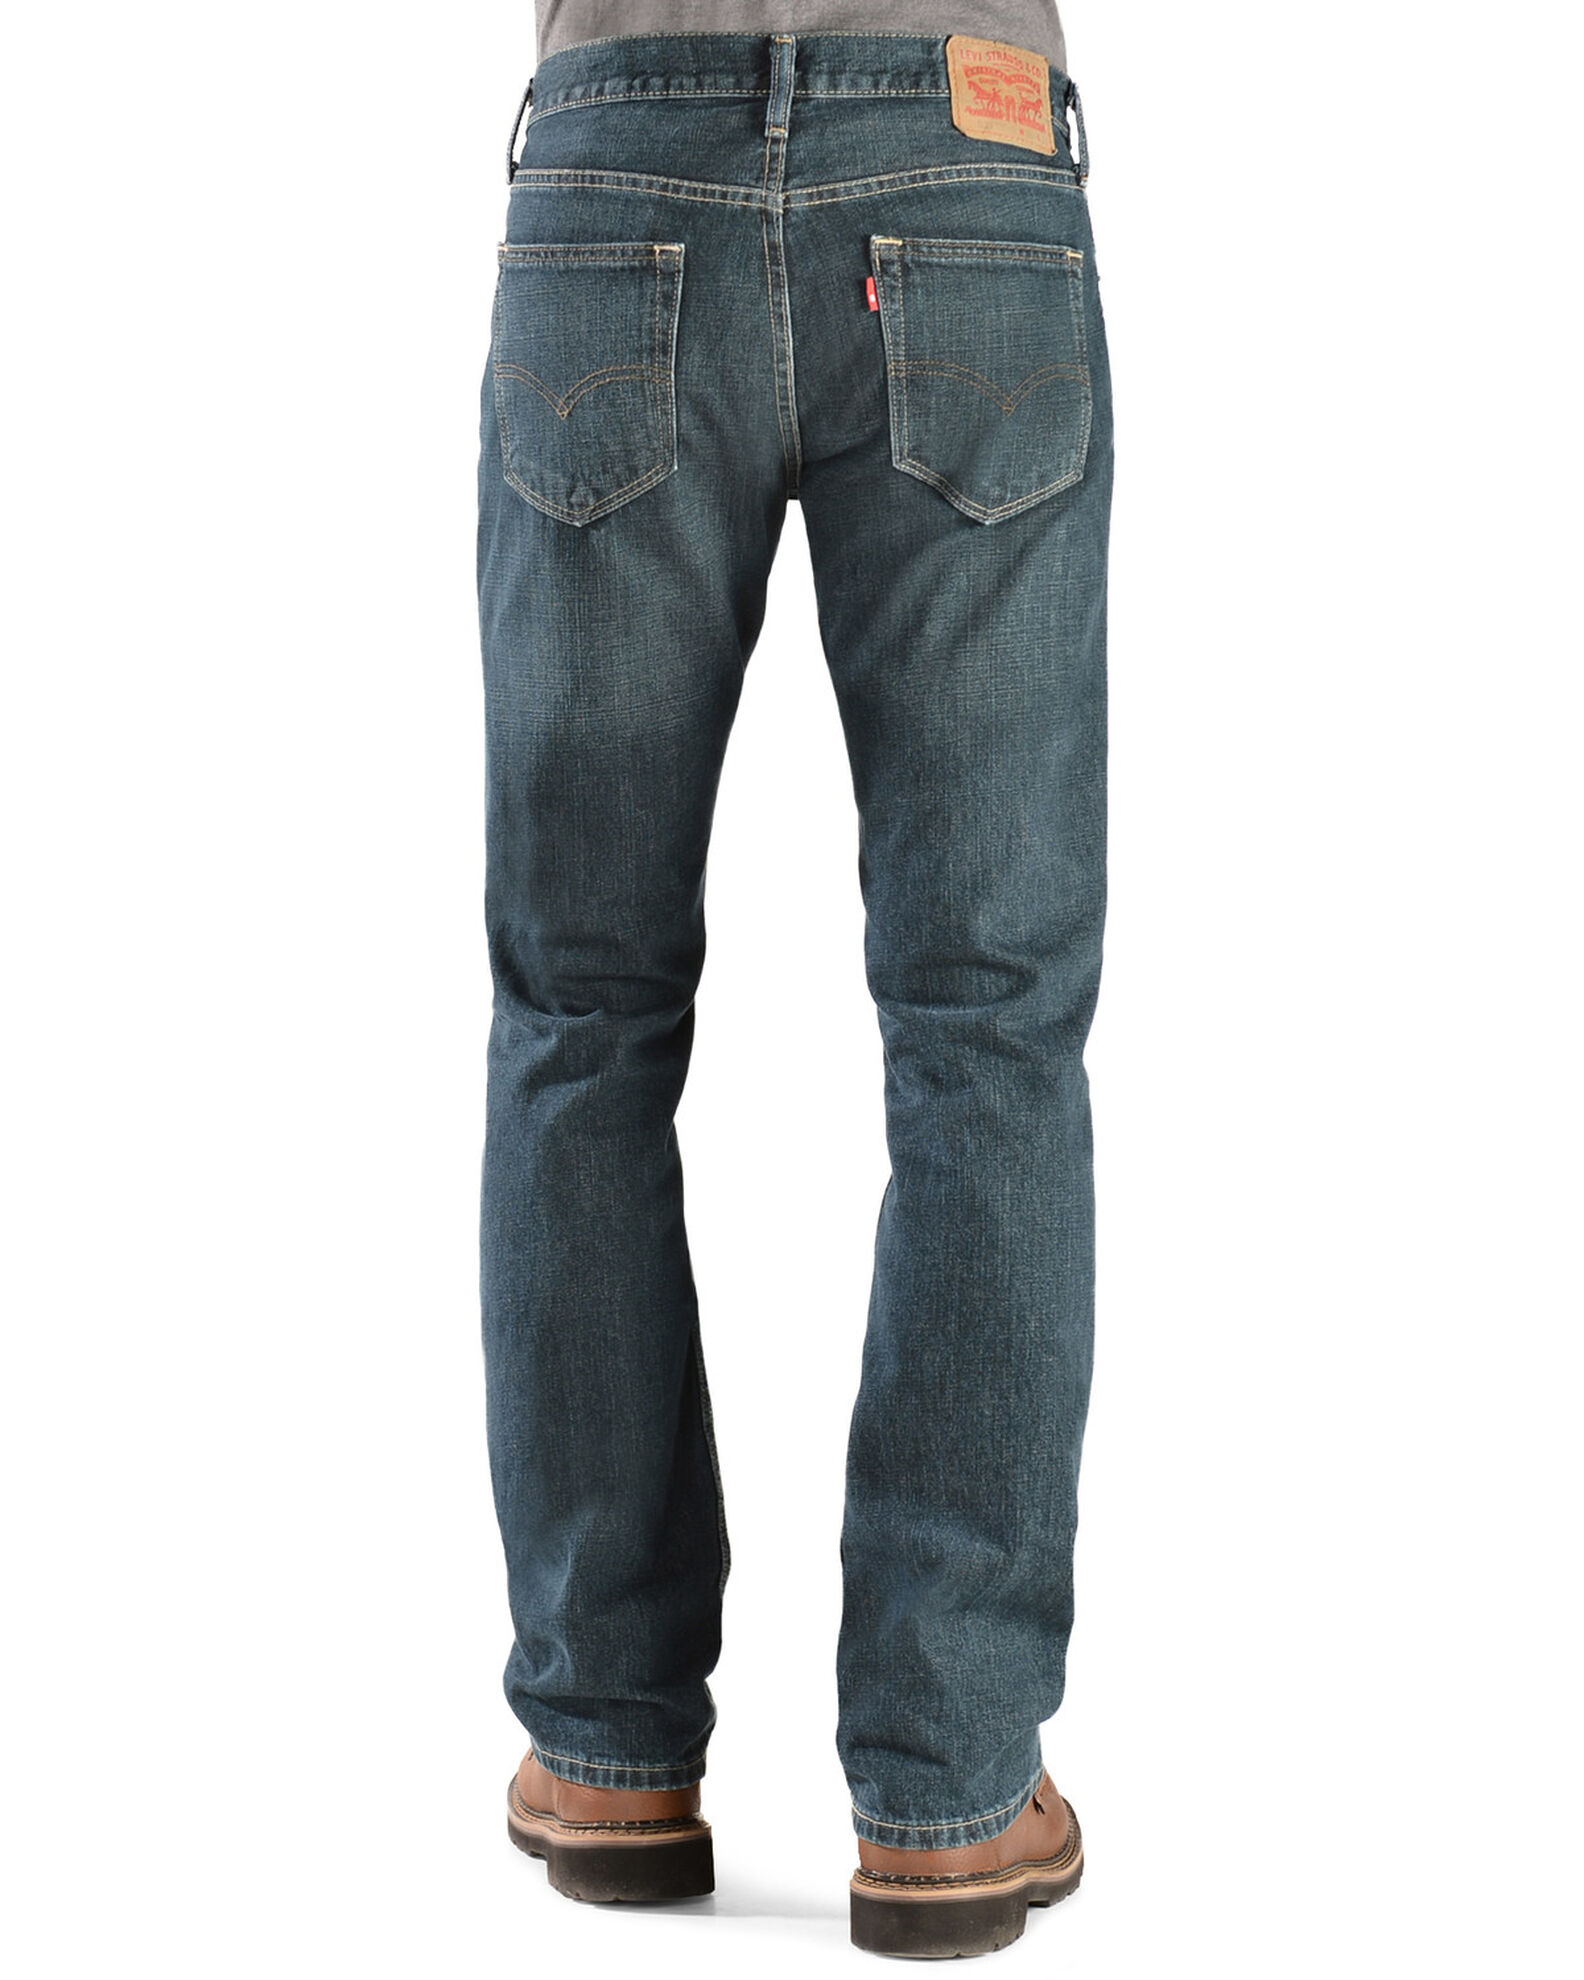 Descubrir 37+ imagen levi’s men’s low rise bootcut jeans